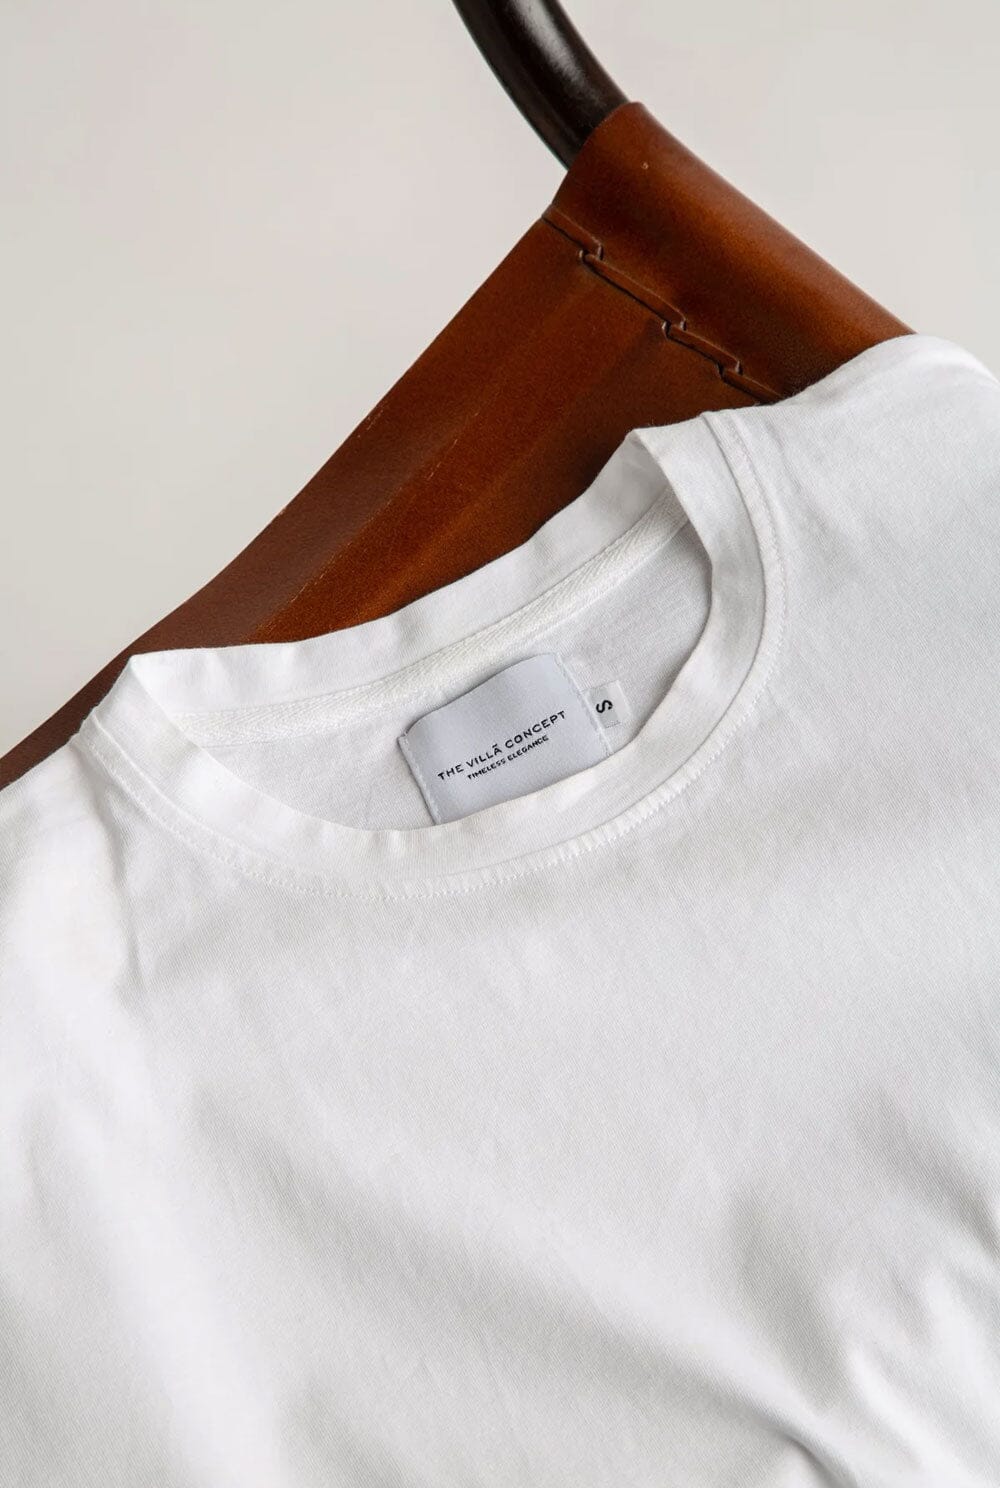 THE T-SHIRT T-Shirts & tops The Villã Concept 